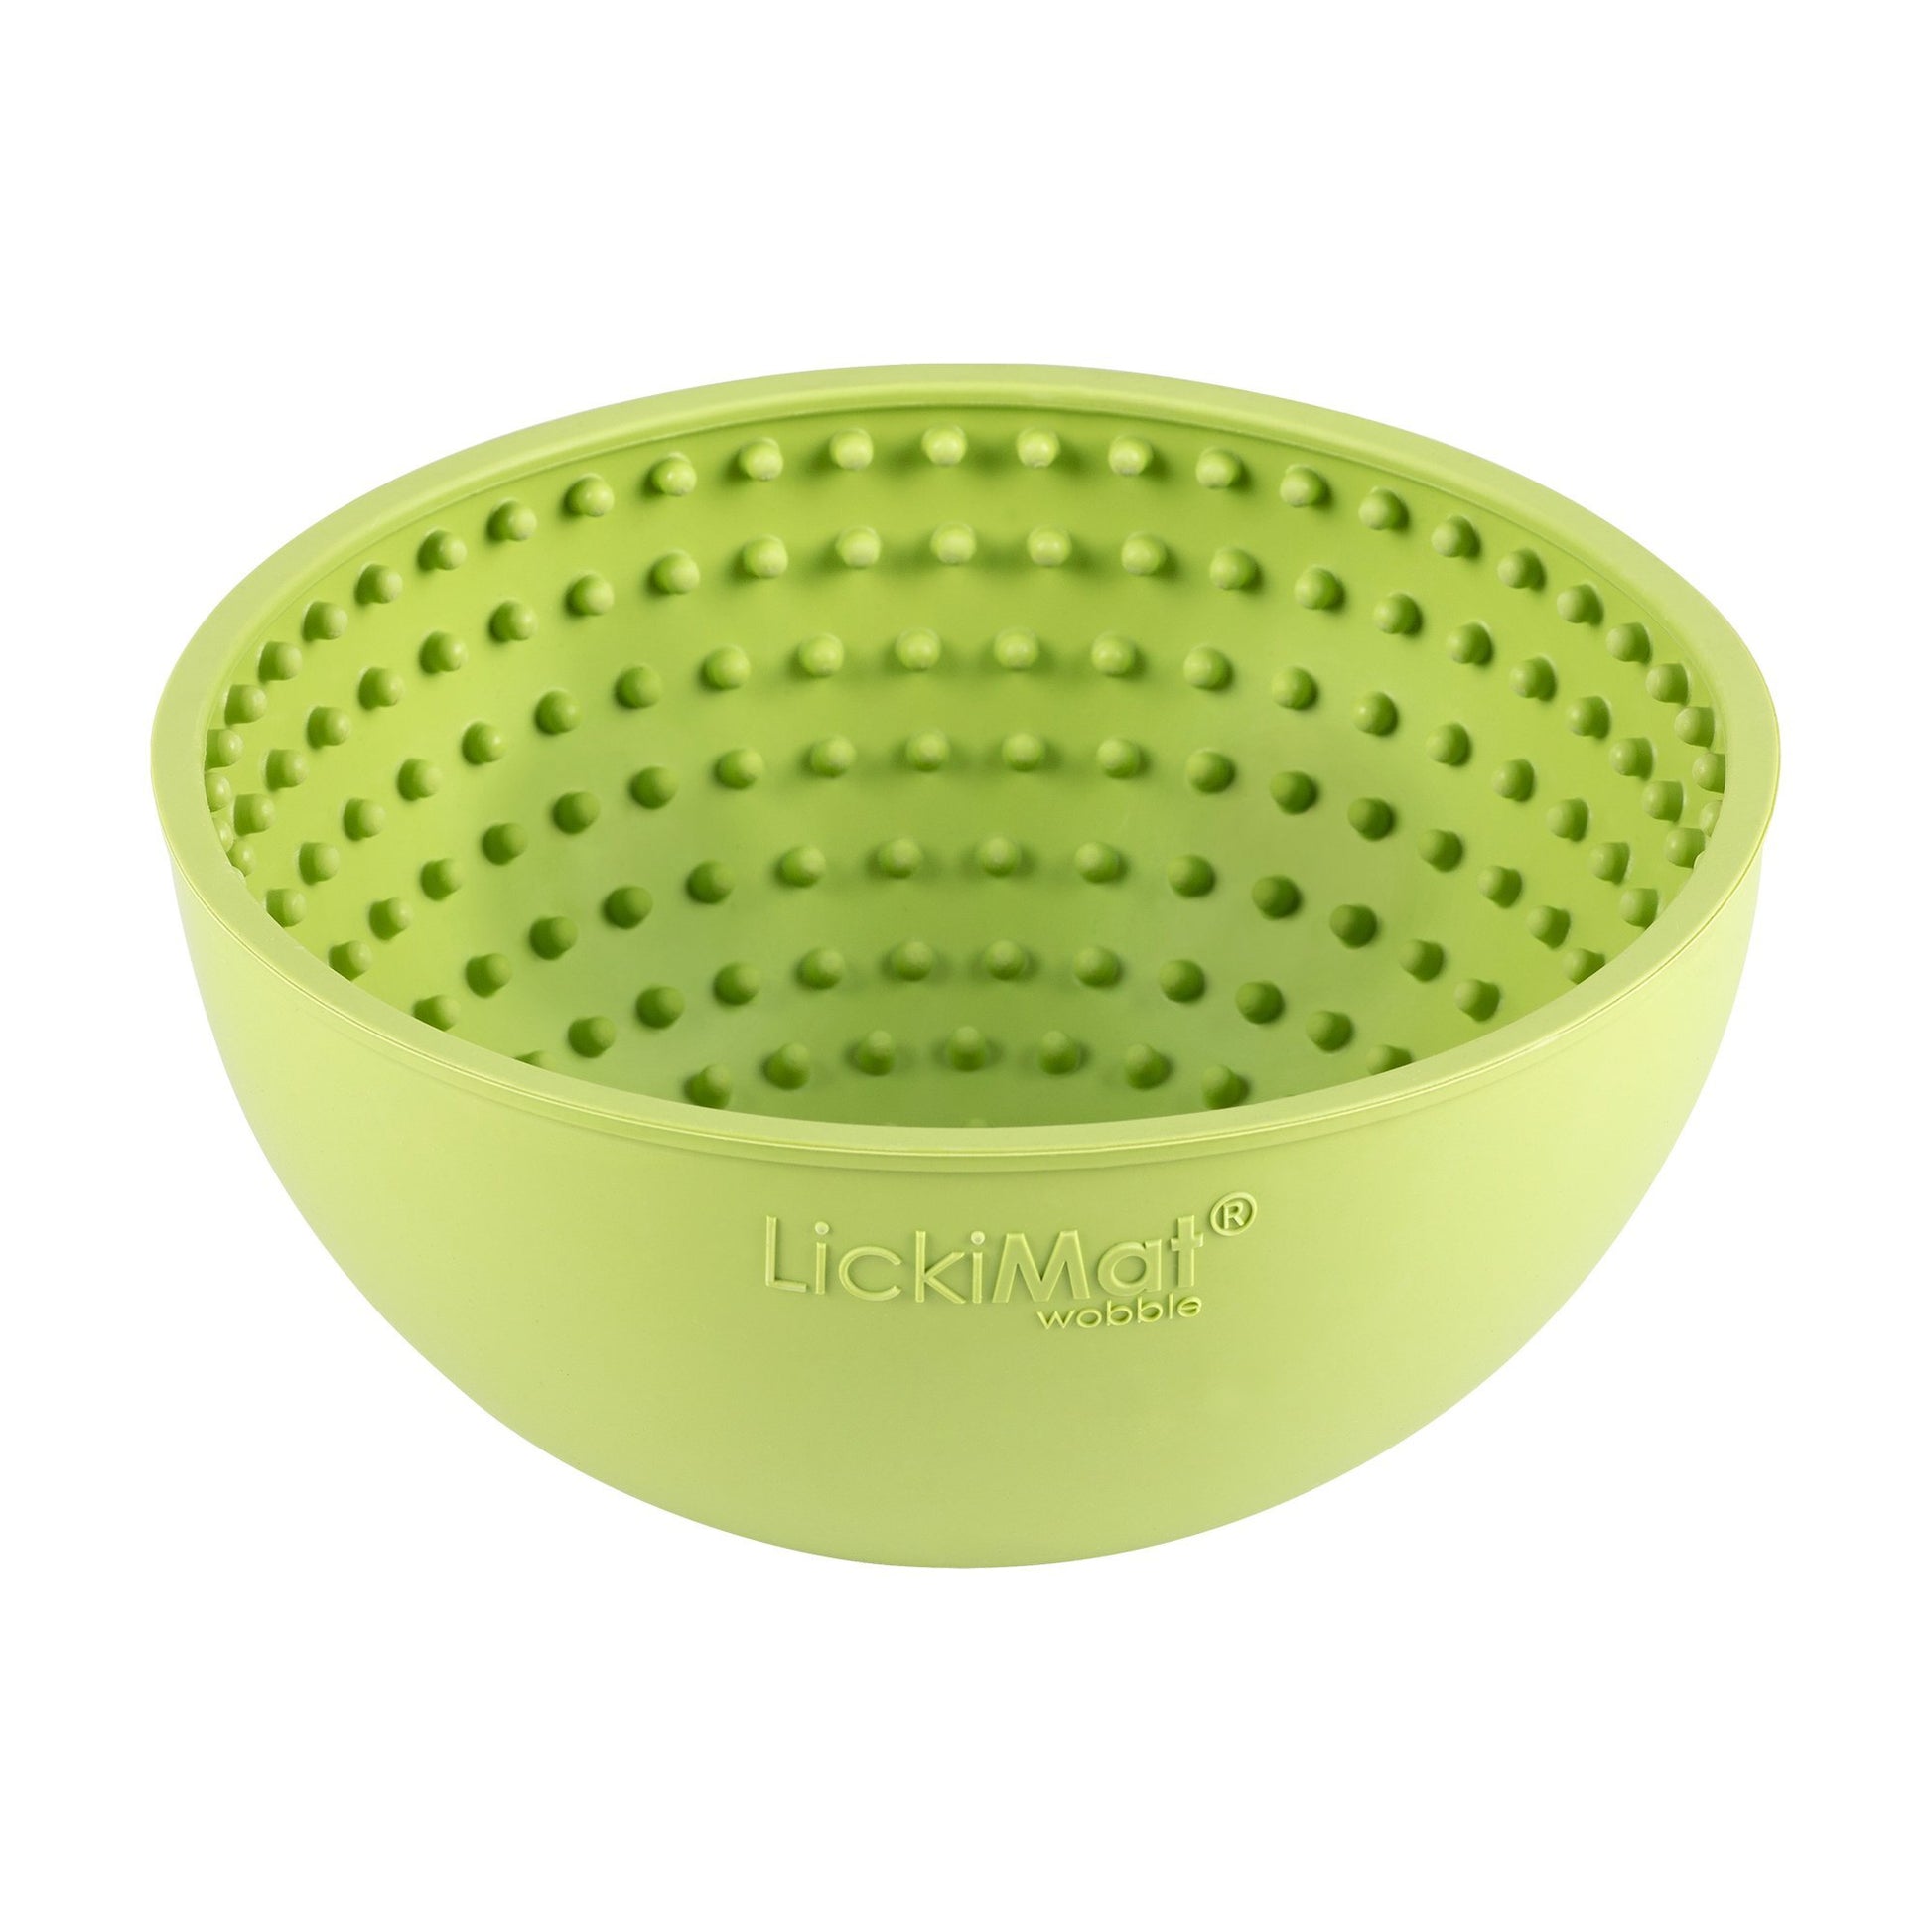 LickiMat Dog Wobble Bowl - Woonona Petfood & Produce